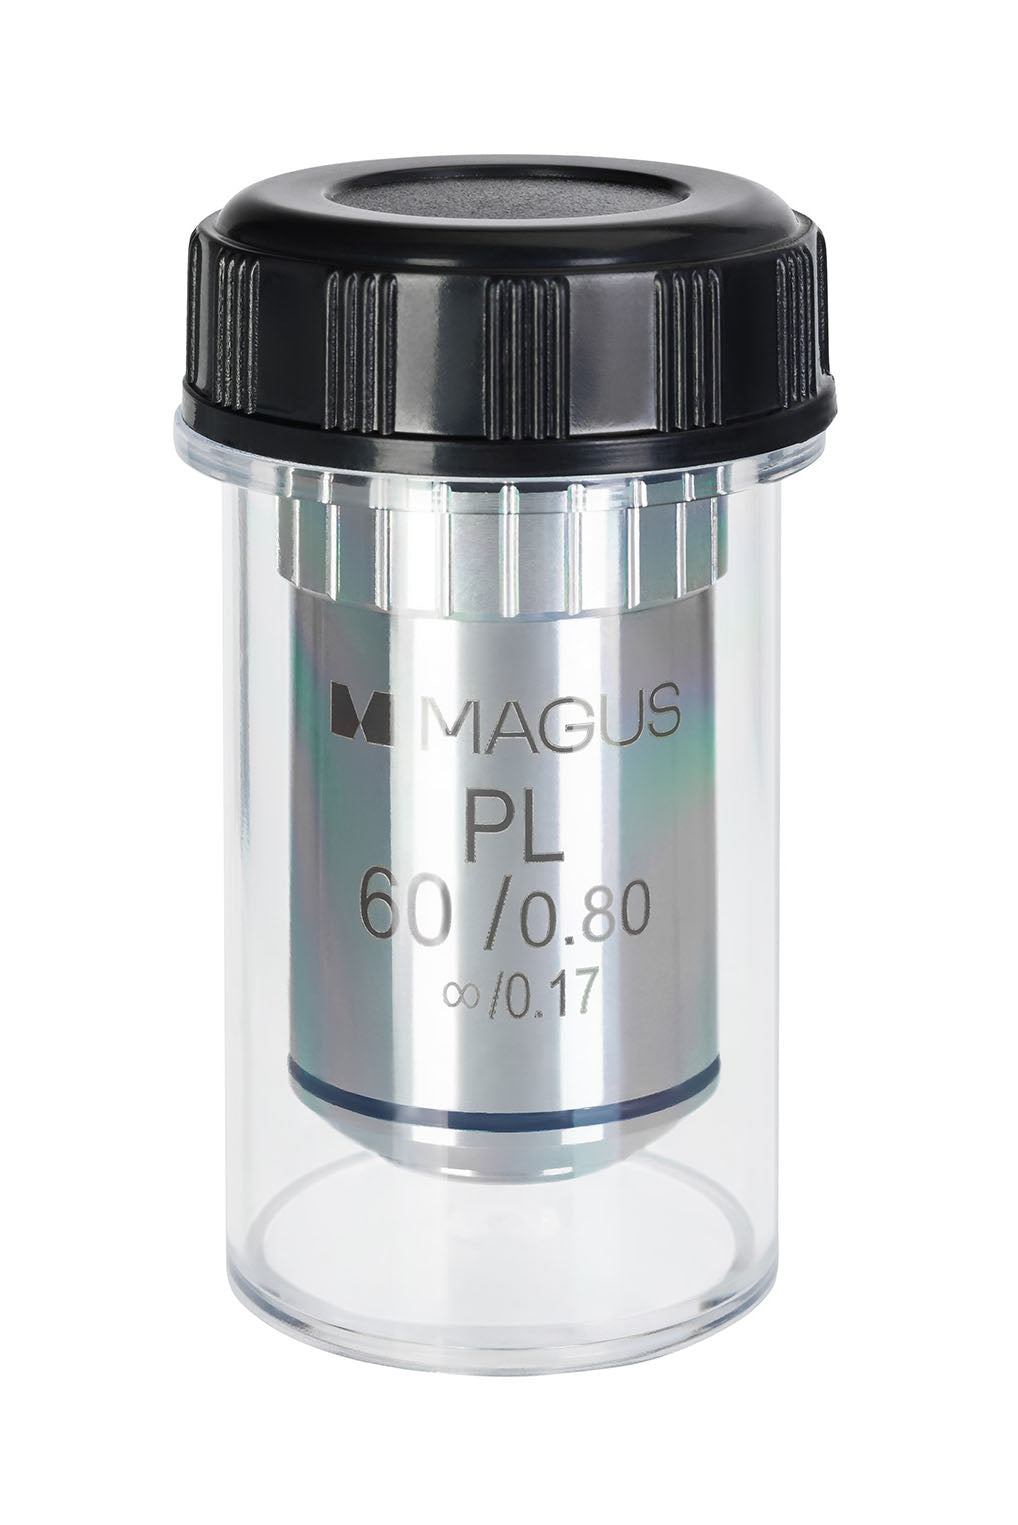 MAGUS MP60 60x/0.80 ∞/0.17 Oneindig Plan Achromatisch Objectief